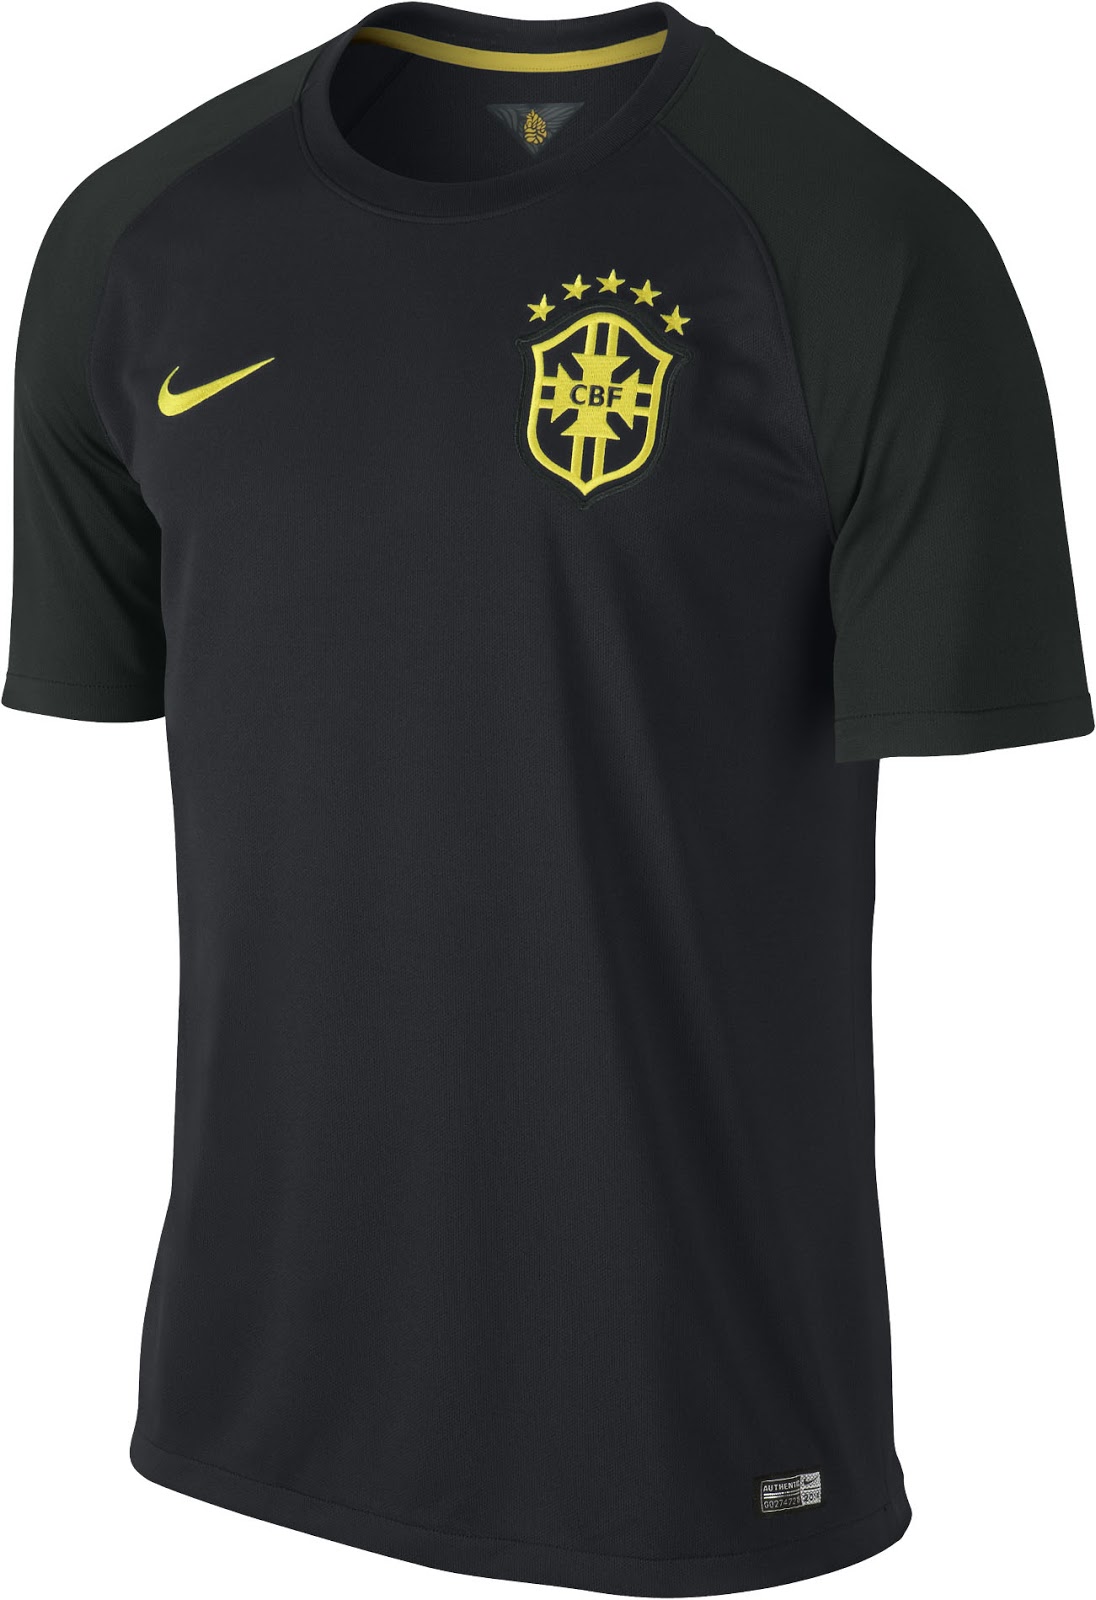 Brazil-2014-NIKE-new-third-kit-4.jpg